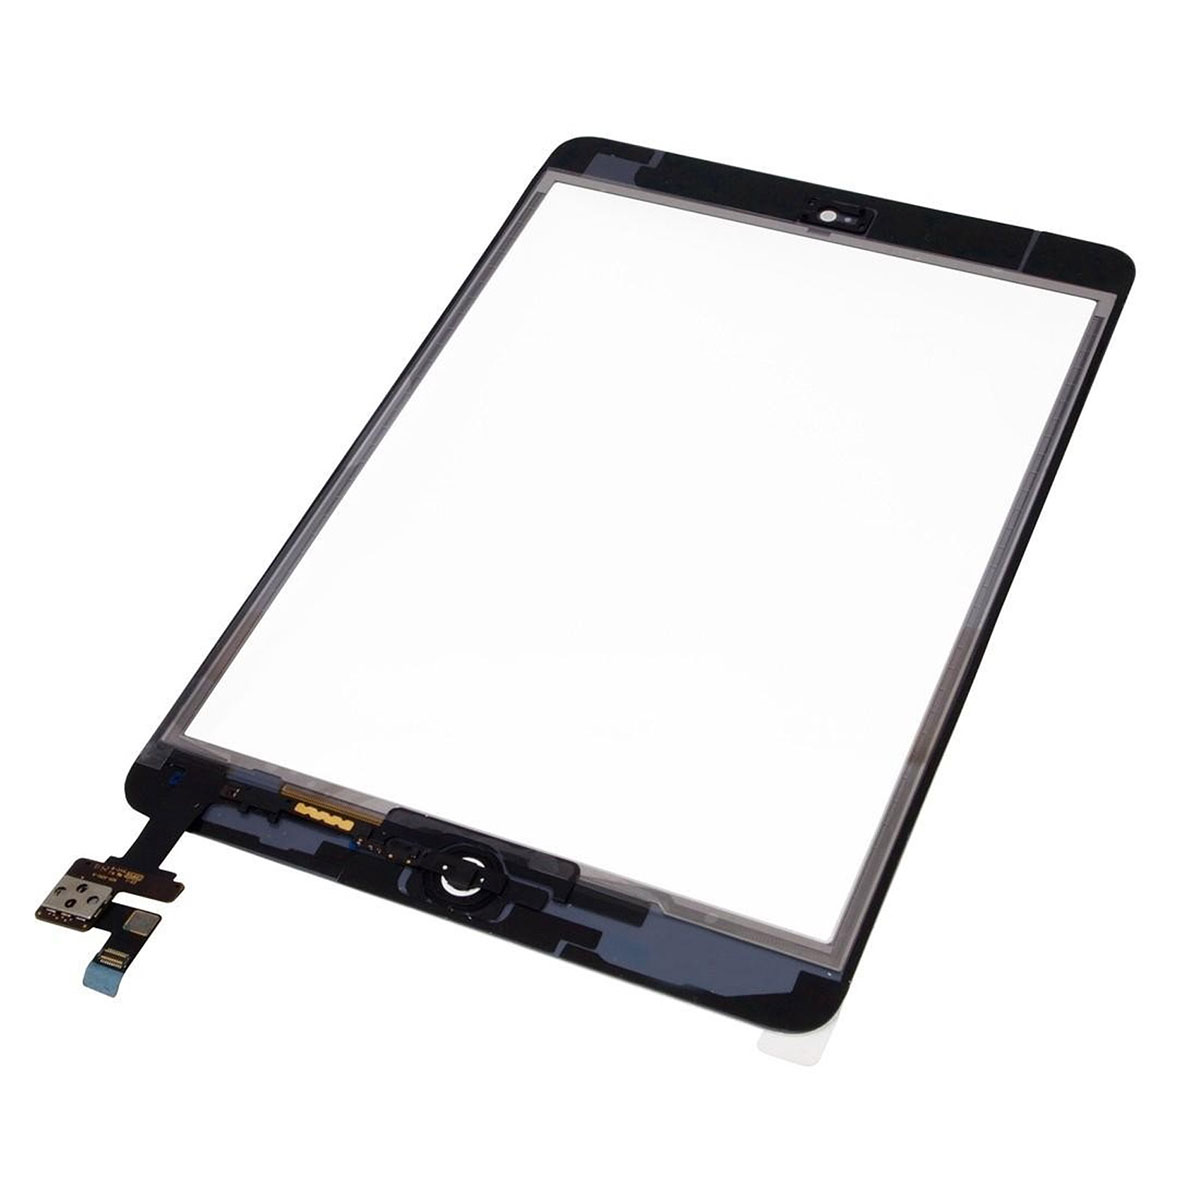 Тачскрин для iPad mini 3 В СБОРЕ, цвет окантовки черный.